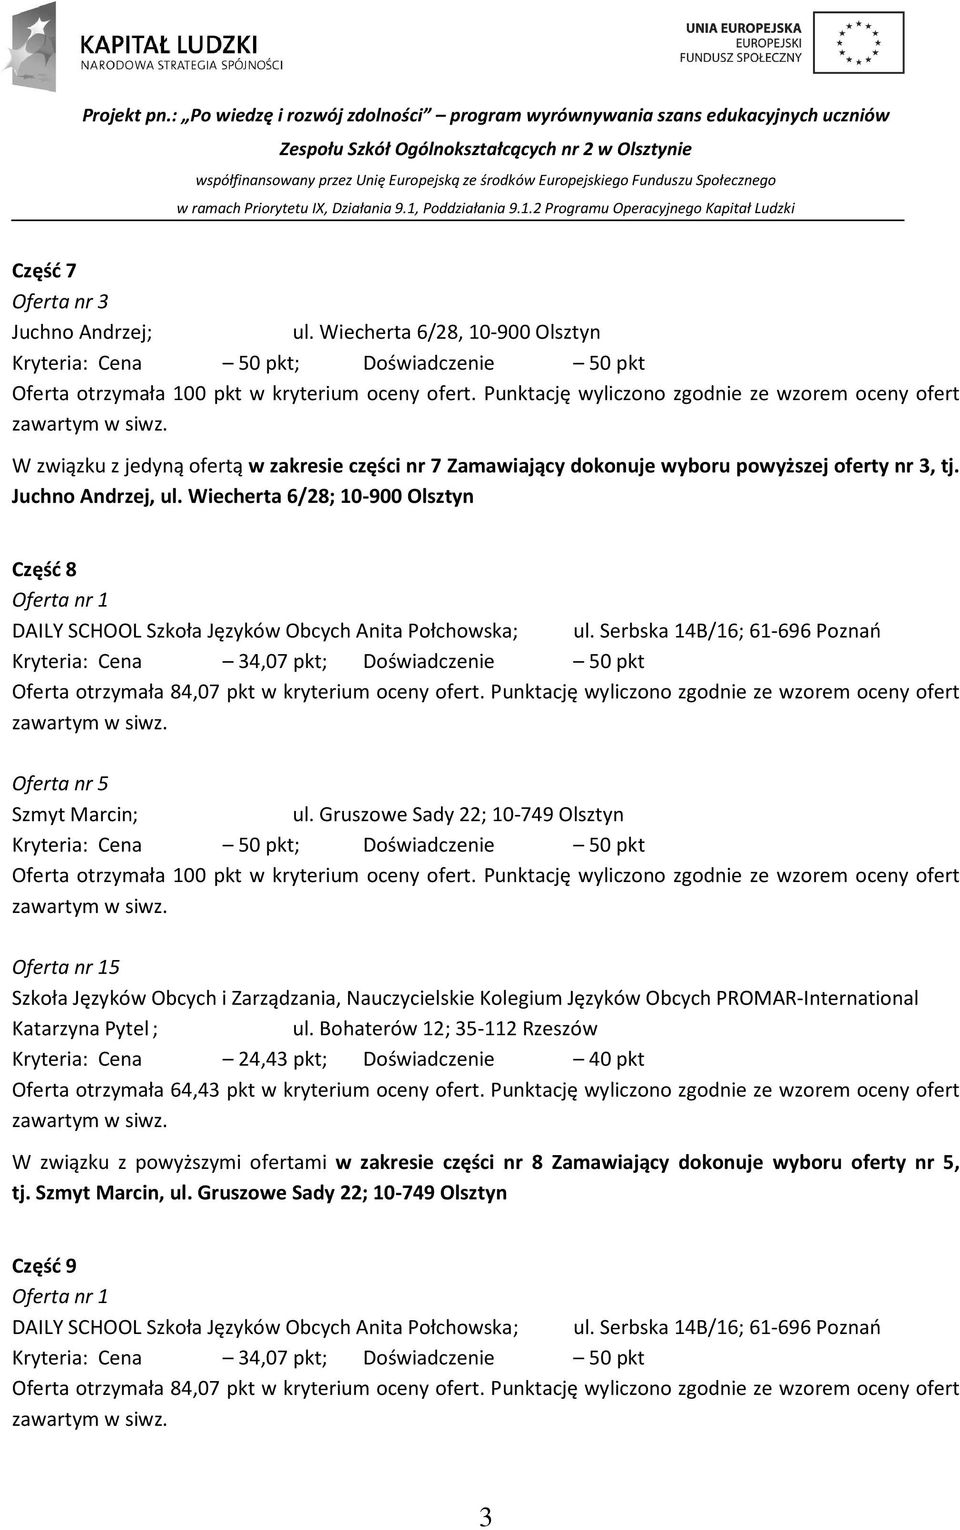 Serbska 14B/16; 61-696 Poznań Kryteria: Cena 34,07 pkt; Doświadczenie 50 pkt Oferta otrzymała 84,07 pkt w kryterium oceny ofert.